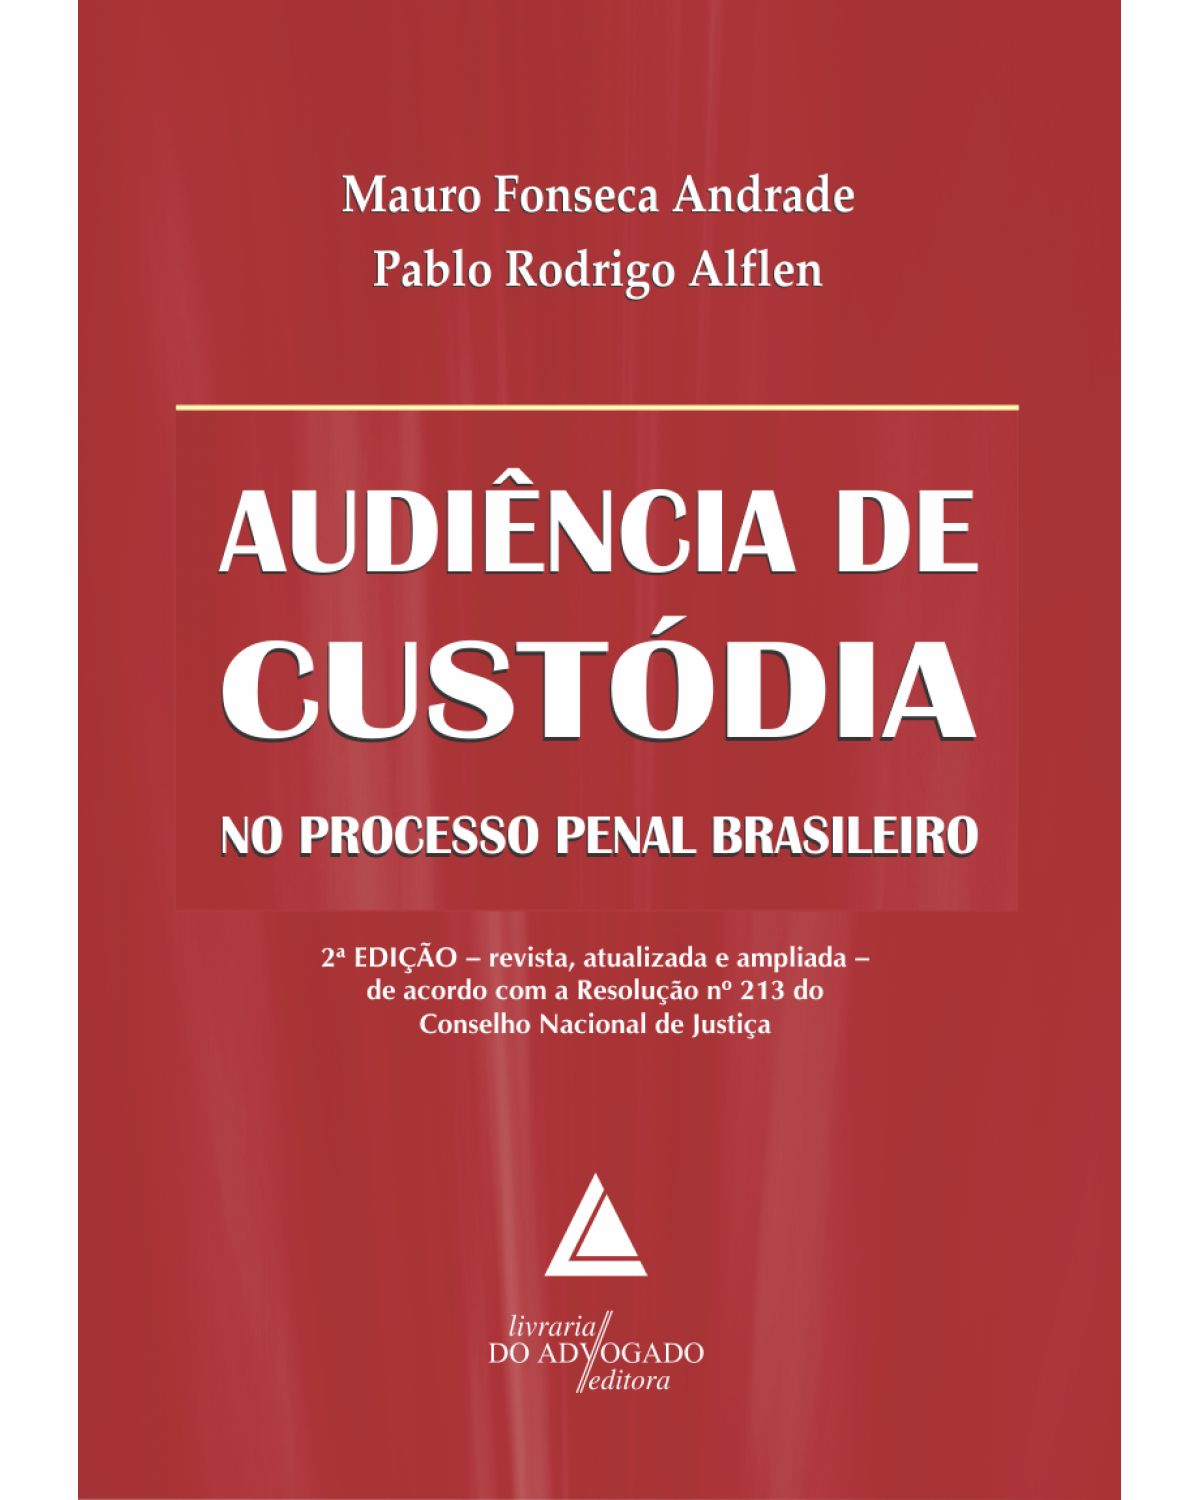 Audiência de custódia no processo penal brasileiro - 2ª Edição